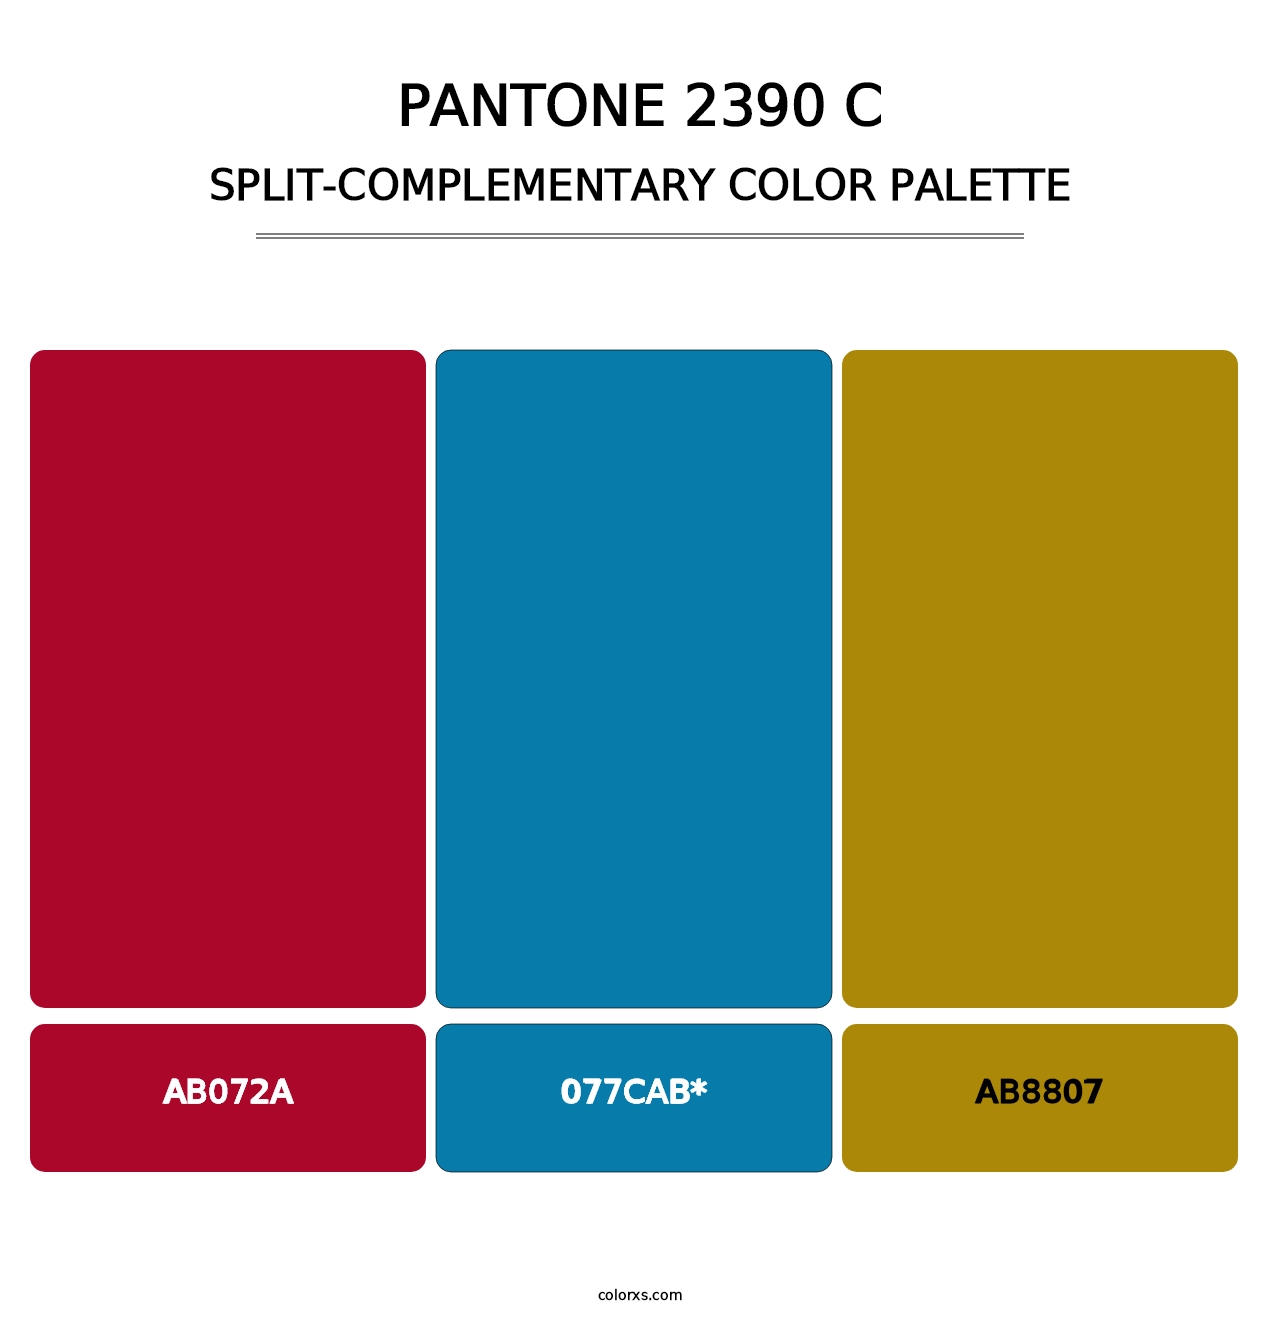 PANTONE 2390 C - Split-Complementary Color Palette